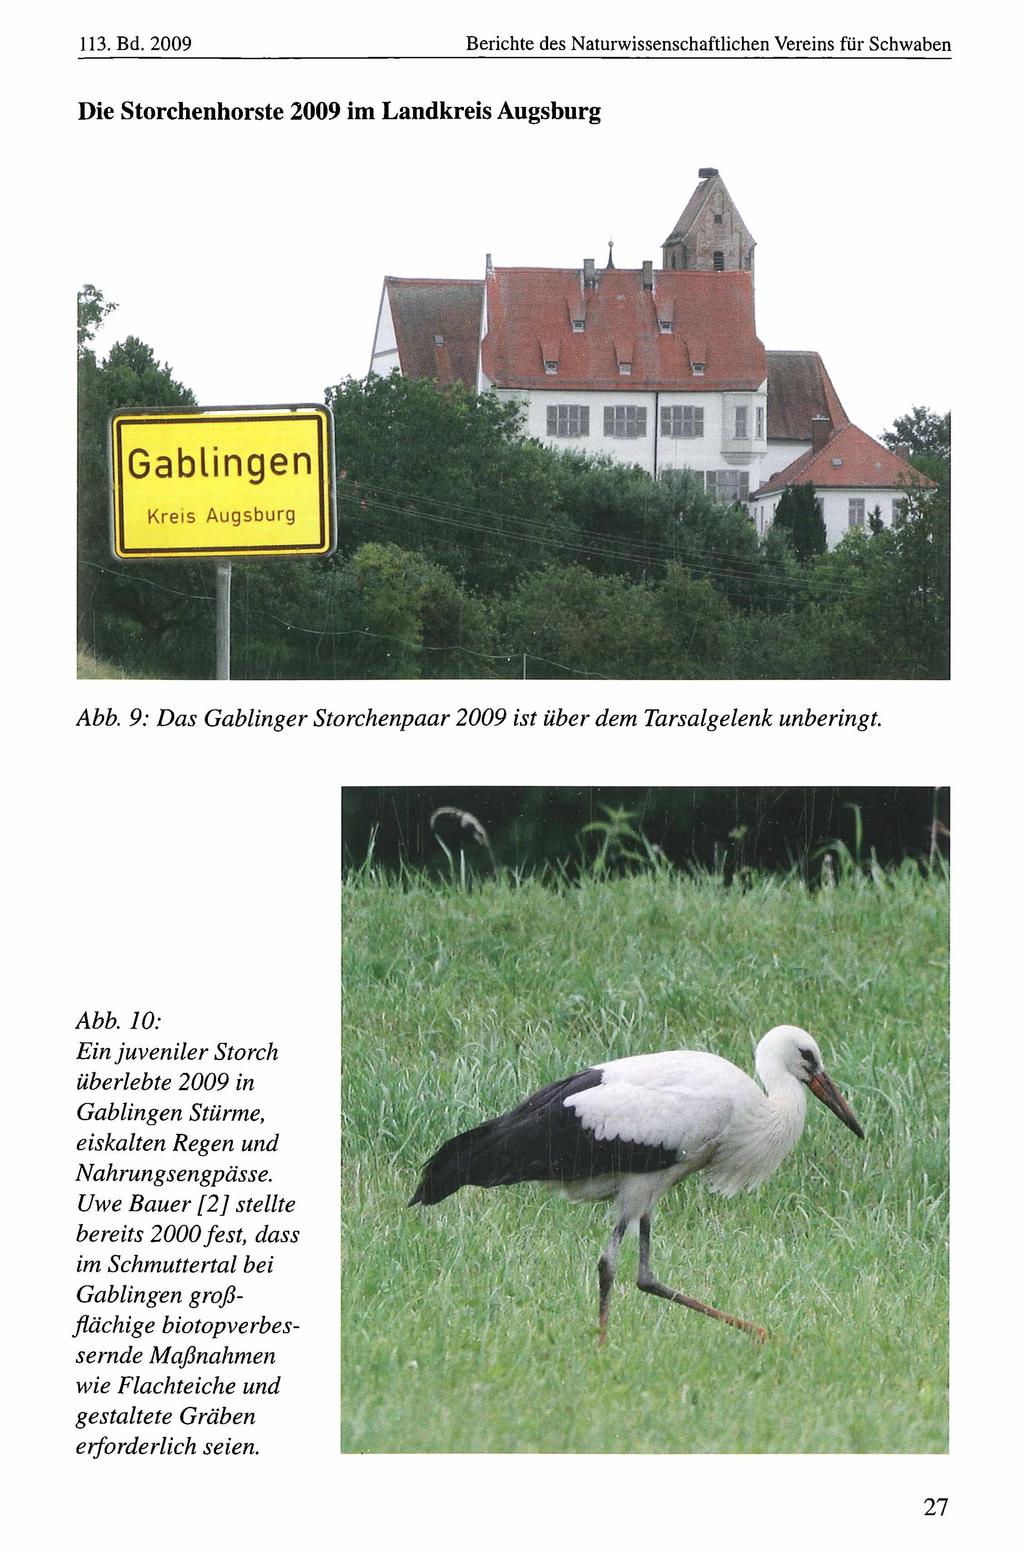 113. Bd. 2009 Naturwissenschaftlicher Verein für Schwaben, Berichte download des Naturwissenschaftlichen unter www.biologiezentrum.